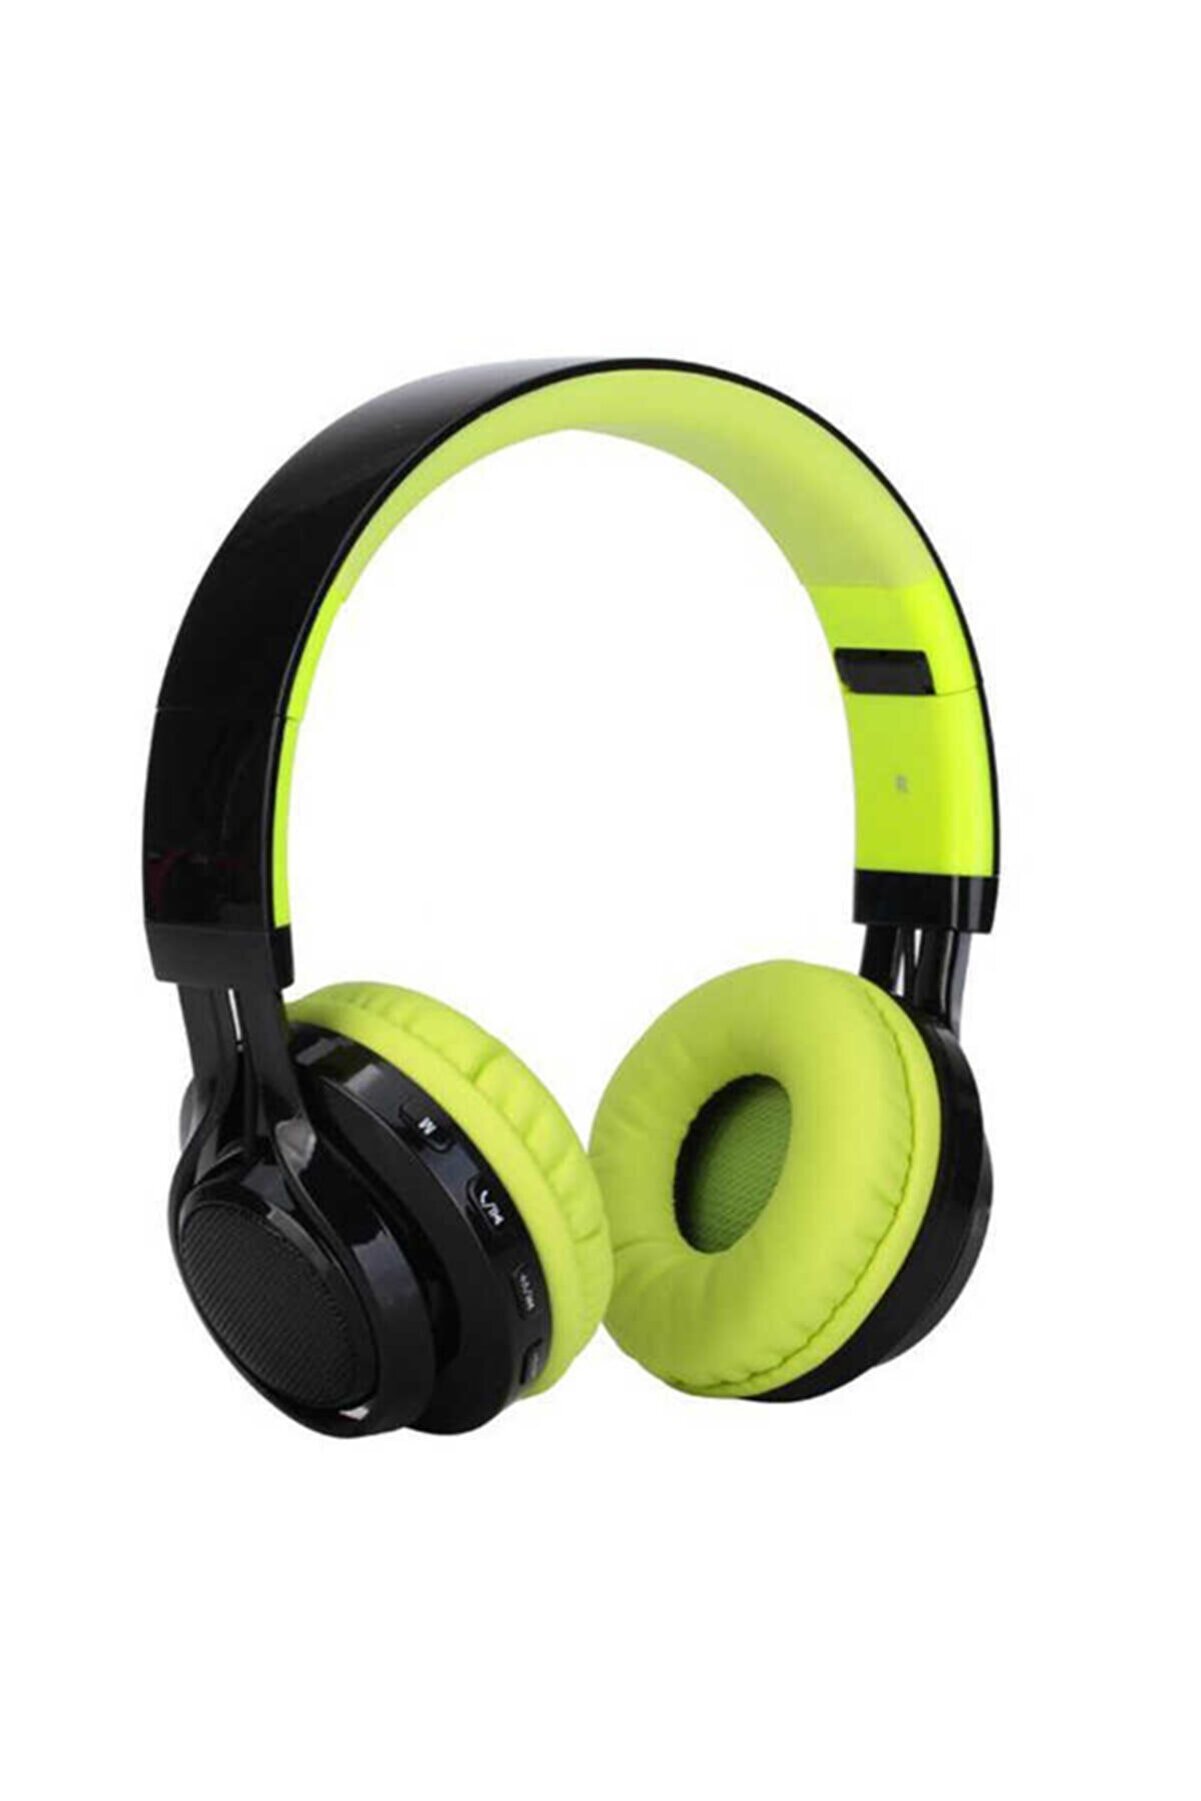 UnDePlus Boyna Askılı Bluetooth Kulaklık Bt-005 Bluetooth Kulaklık